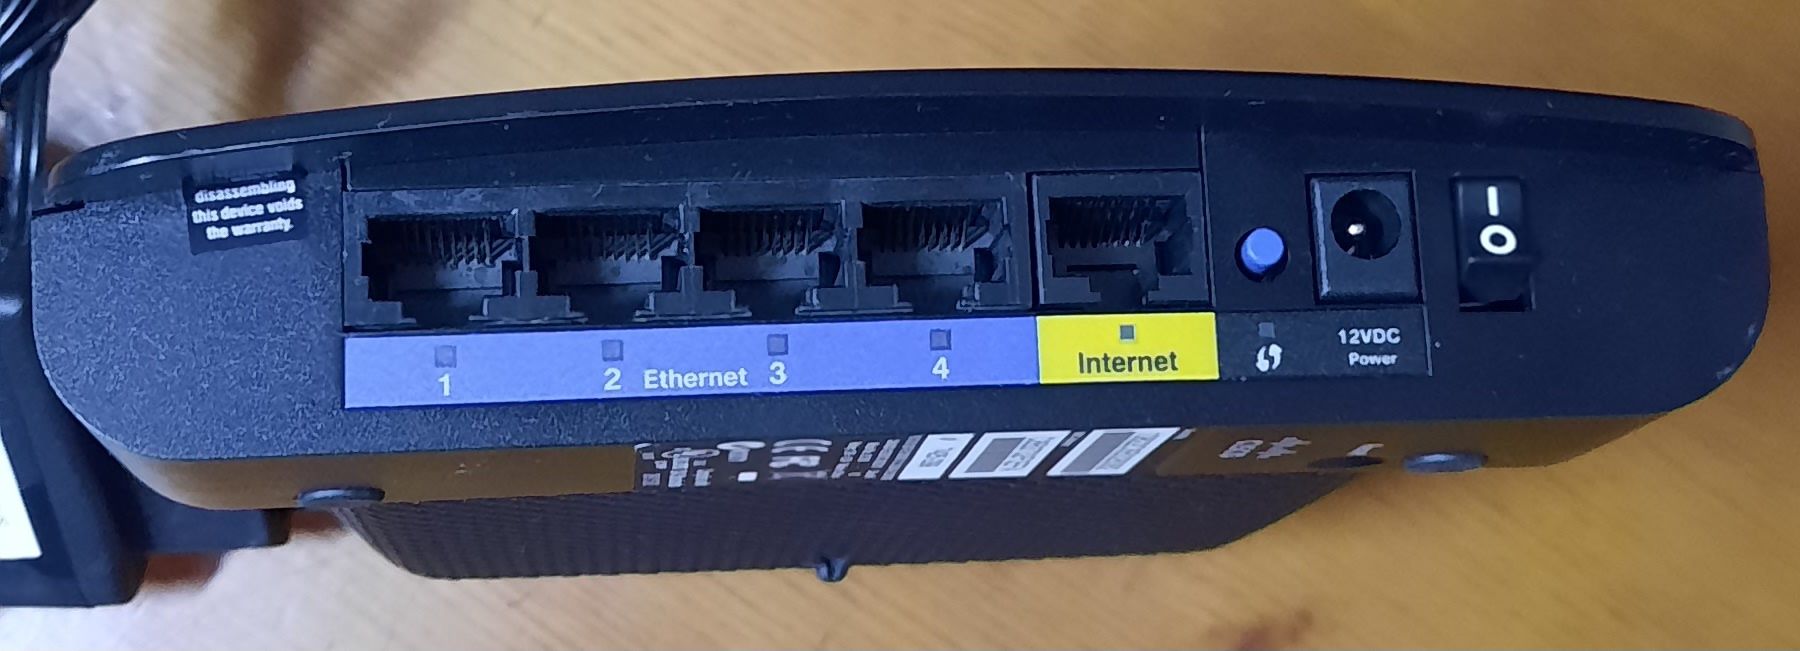 Router Cisco e1200